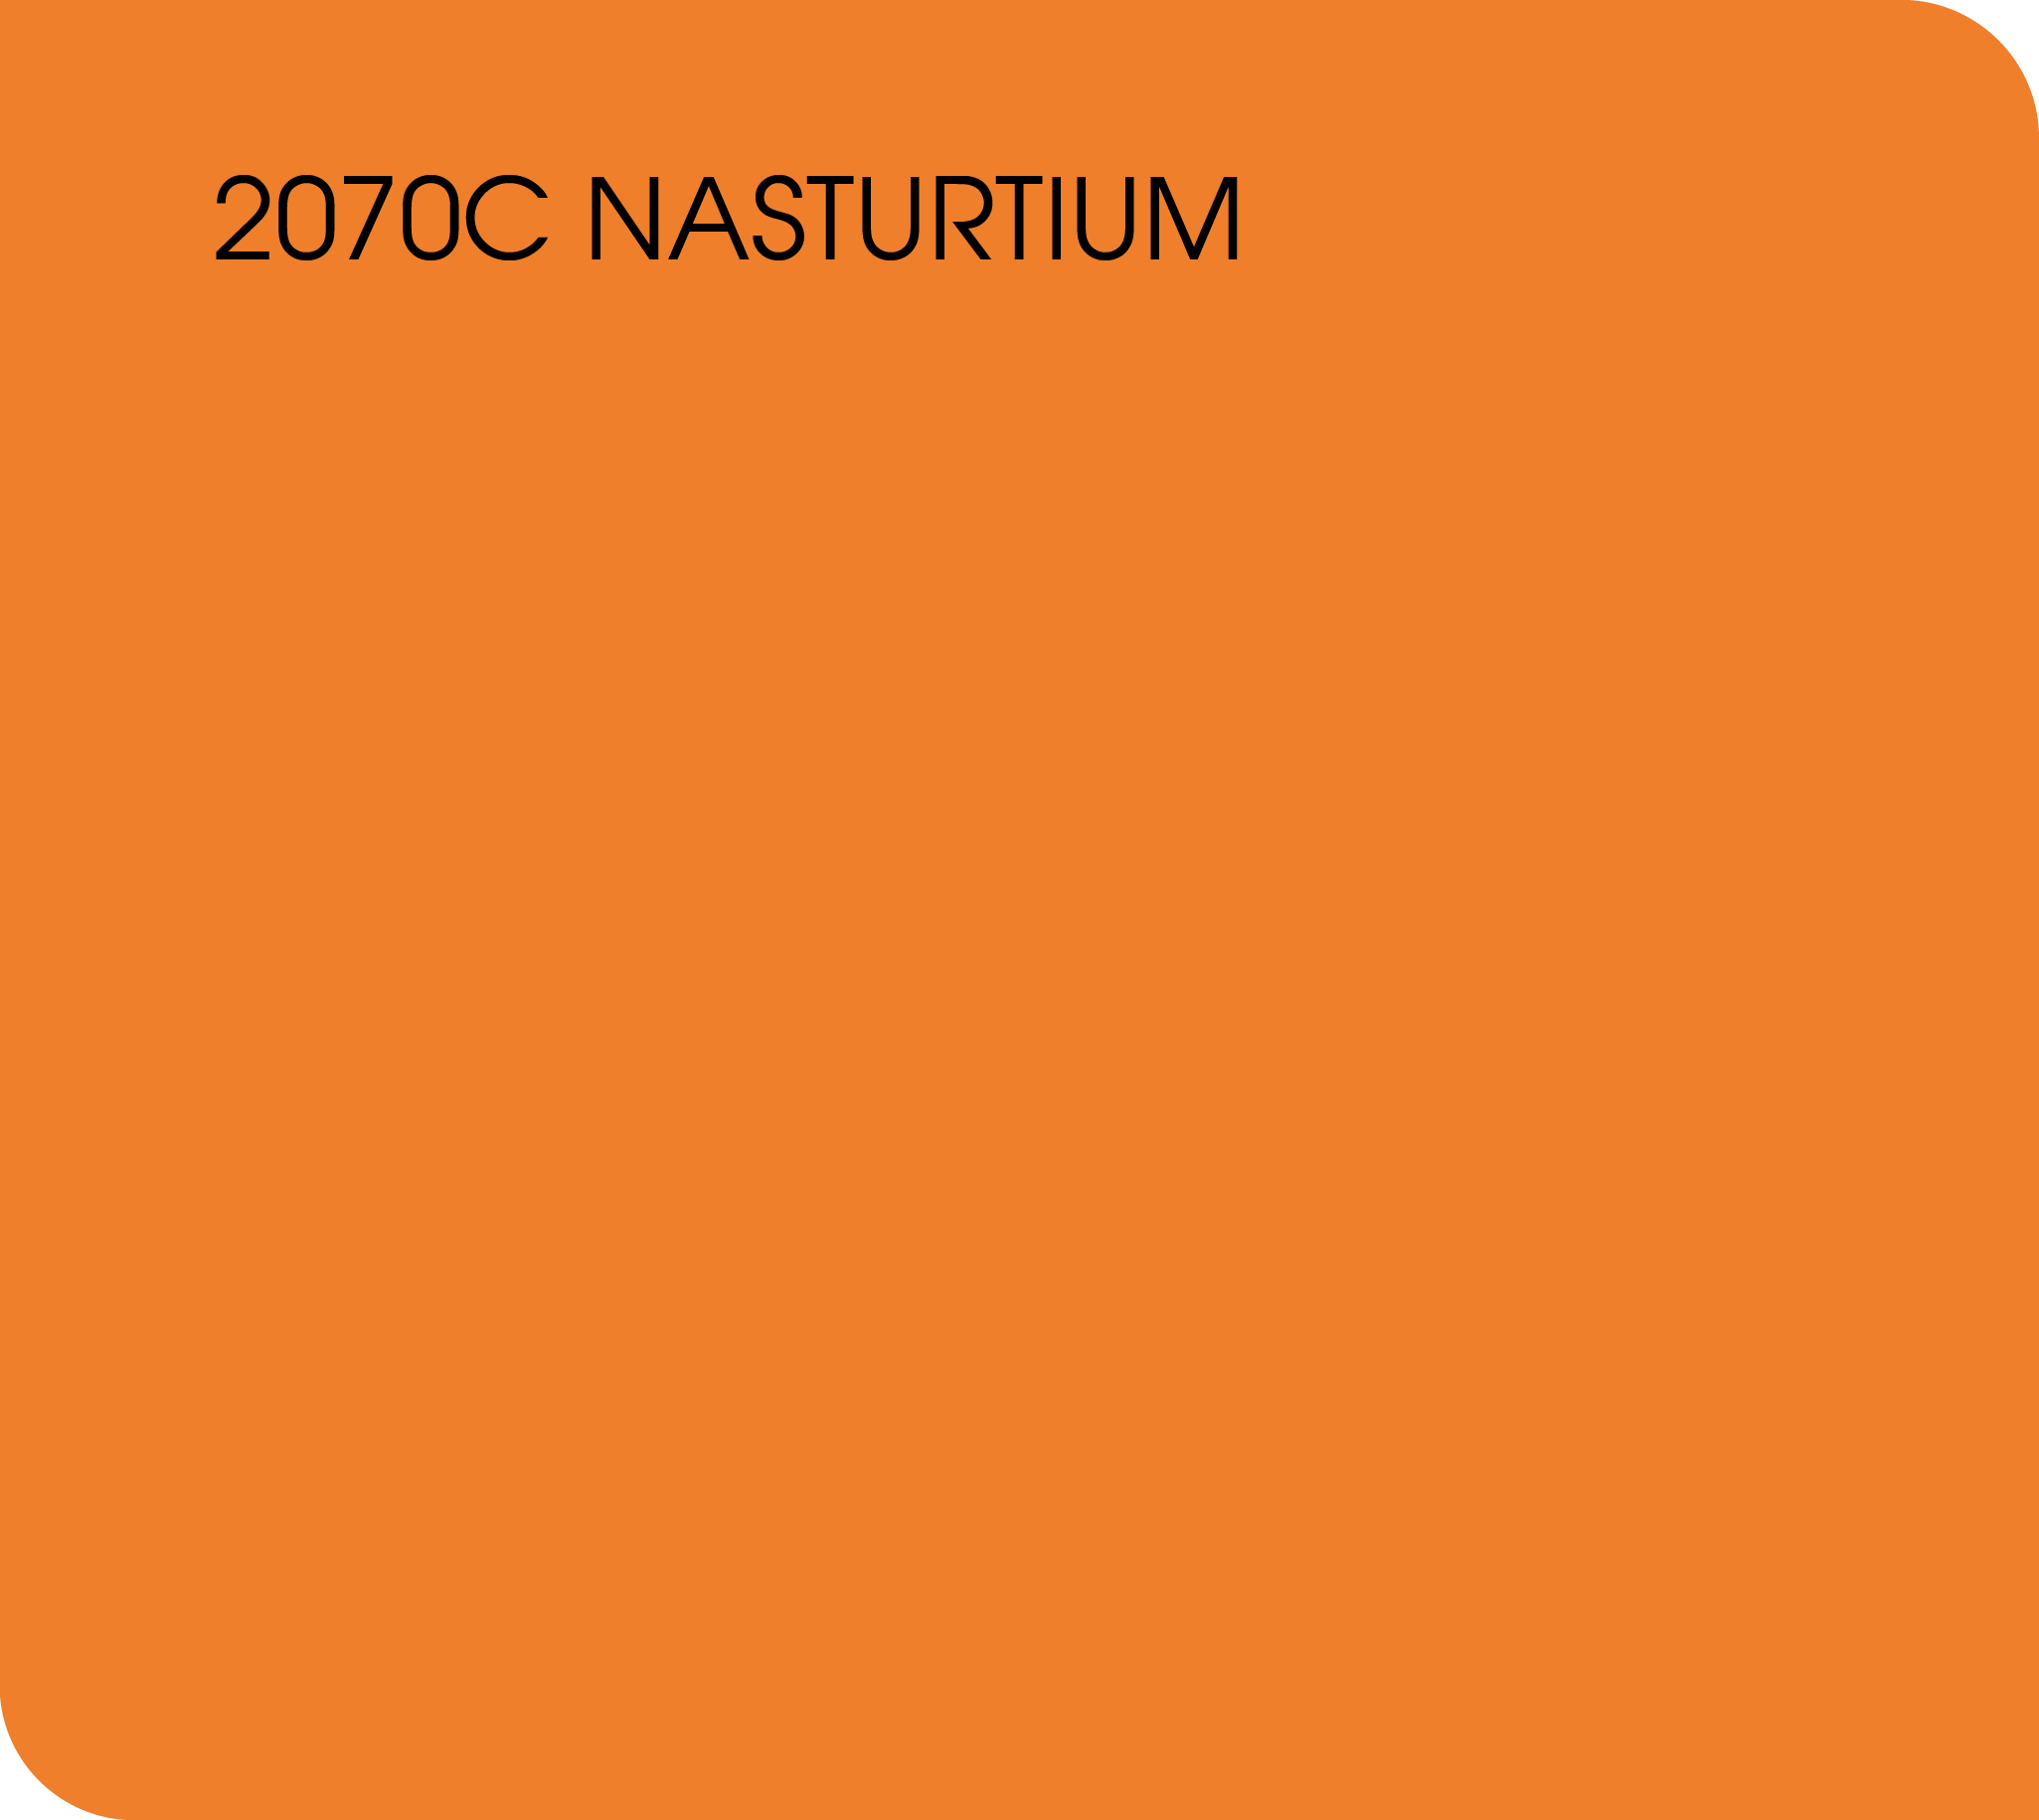 nasturtium 2070C